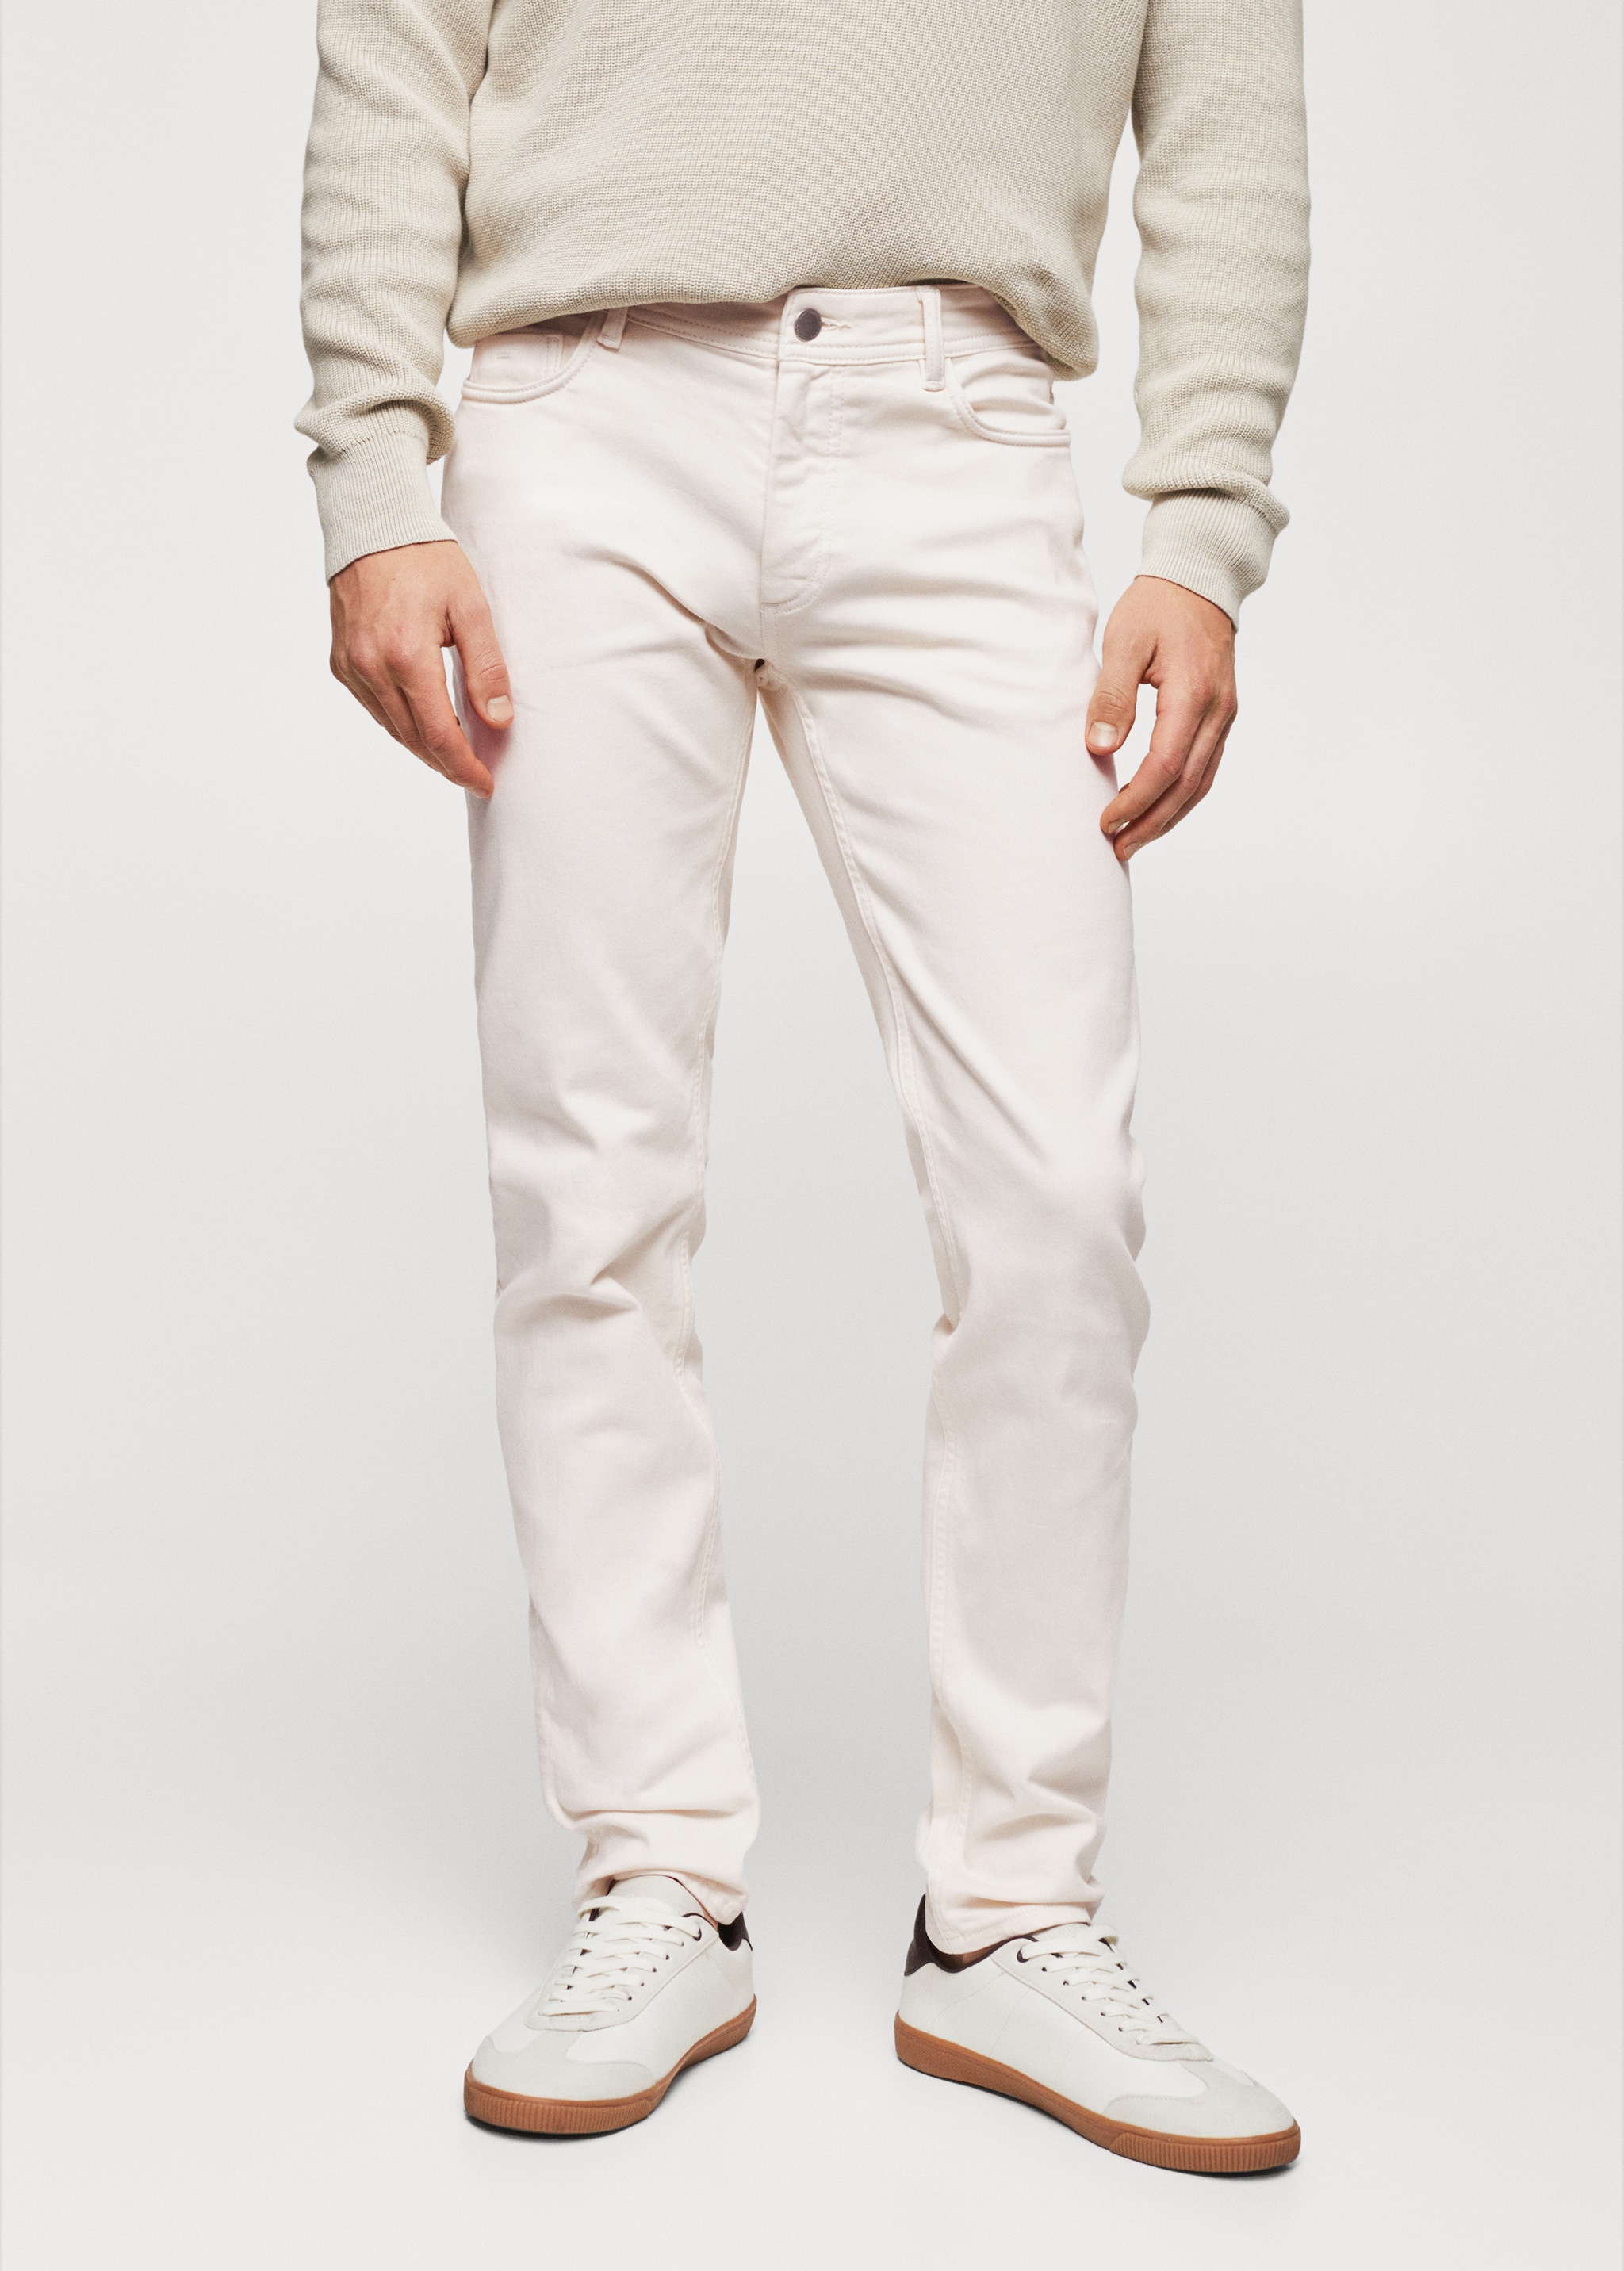 Slim-fit coloured jeans - Medium plane